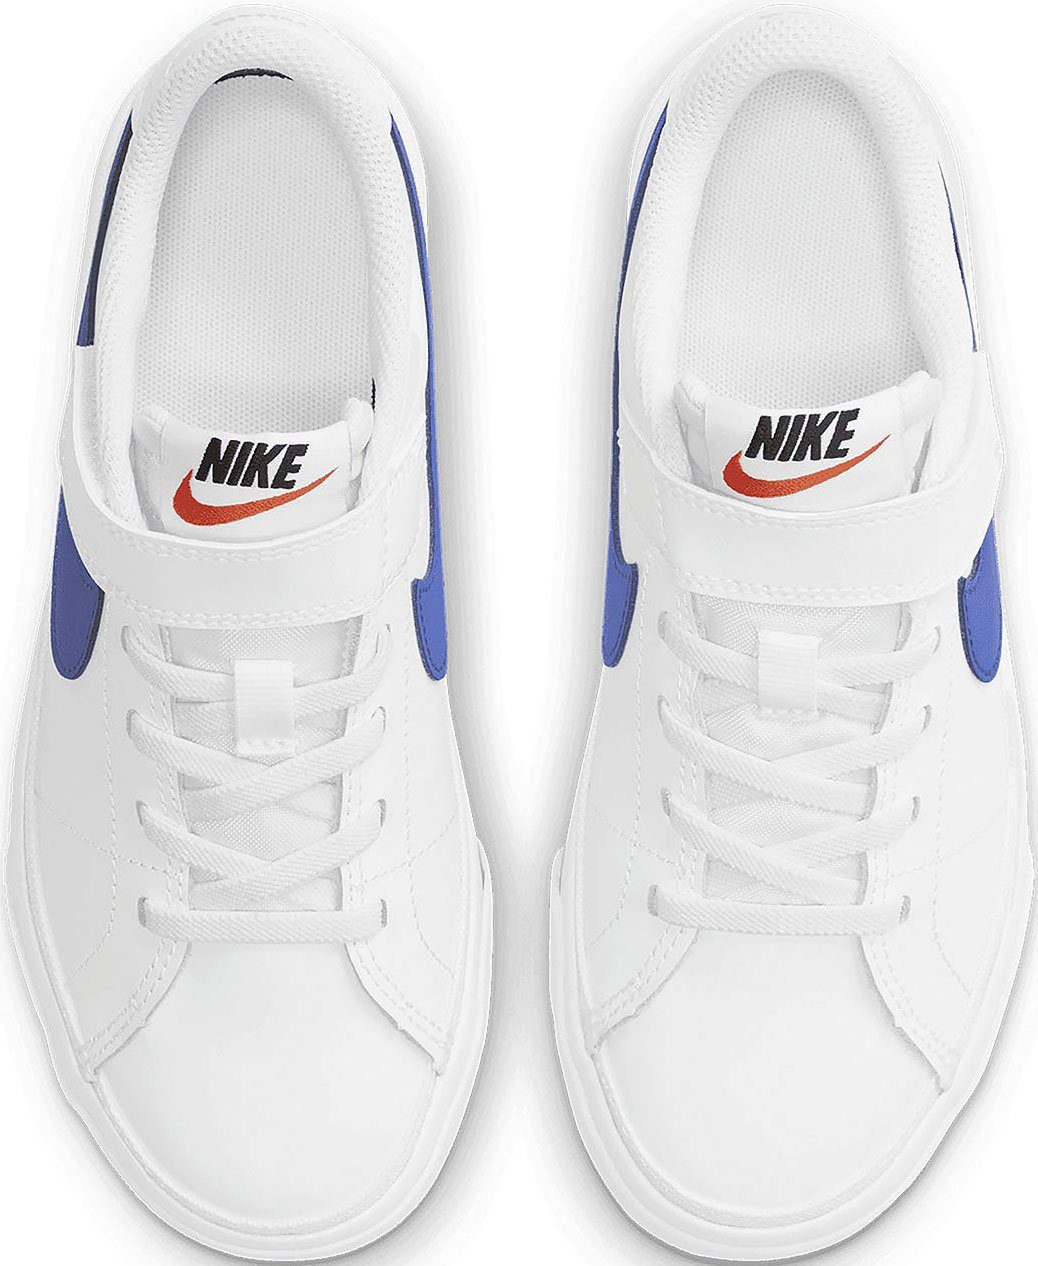 LEGACY Sportswear COURT Sneaker Nike (PS) weiß-red